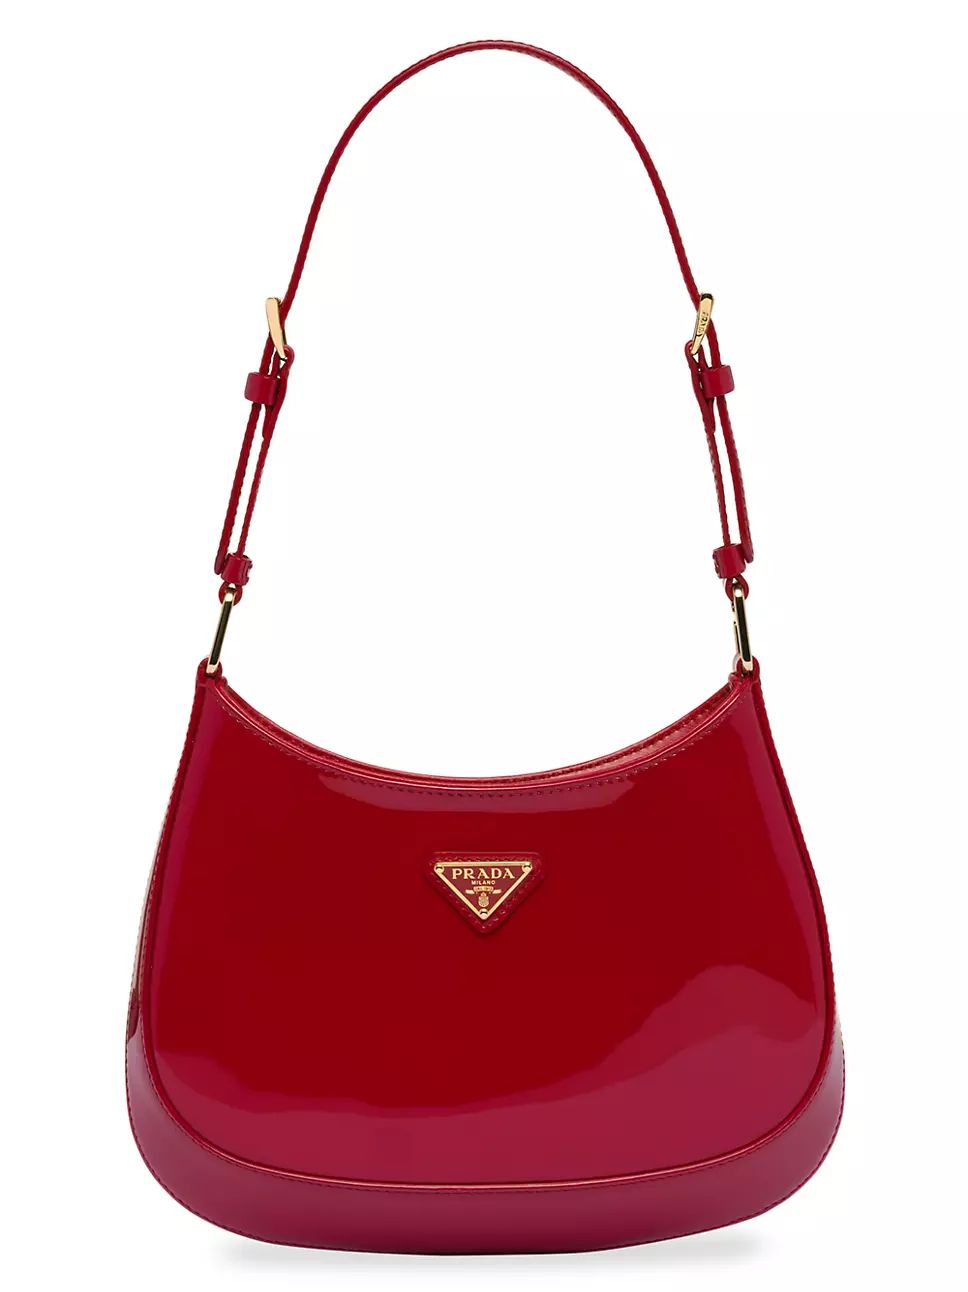 Prada Cleo Patent Leather Shoulder Bag | Saks Fifth Avenue